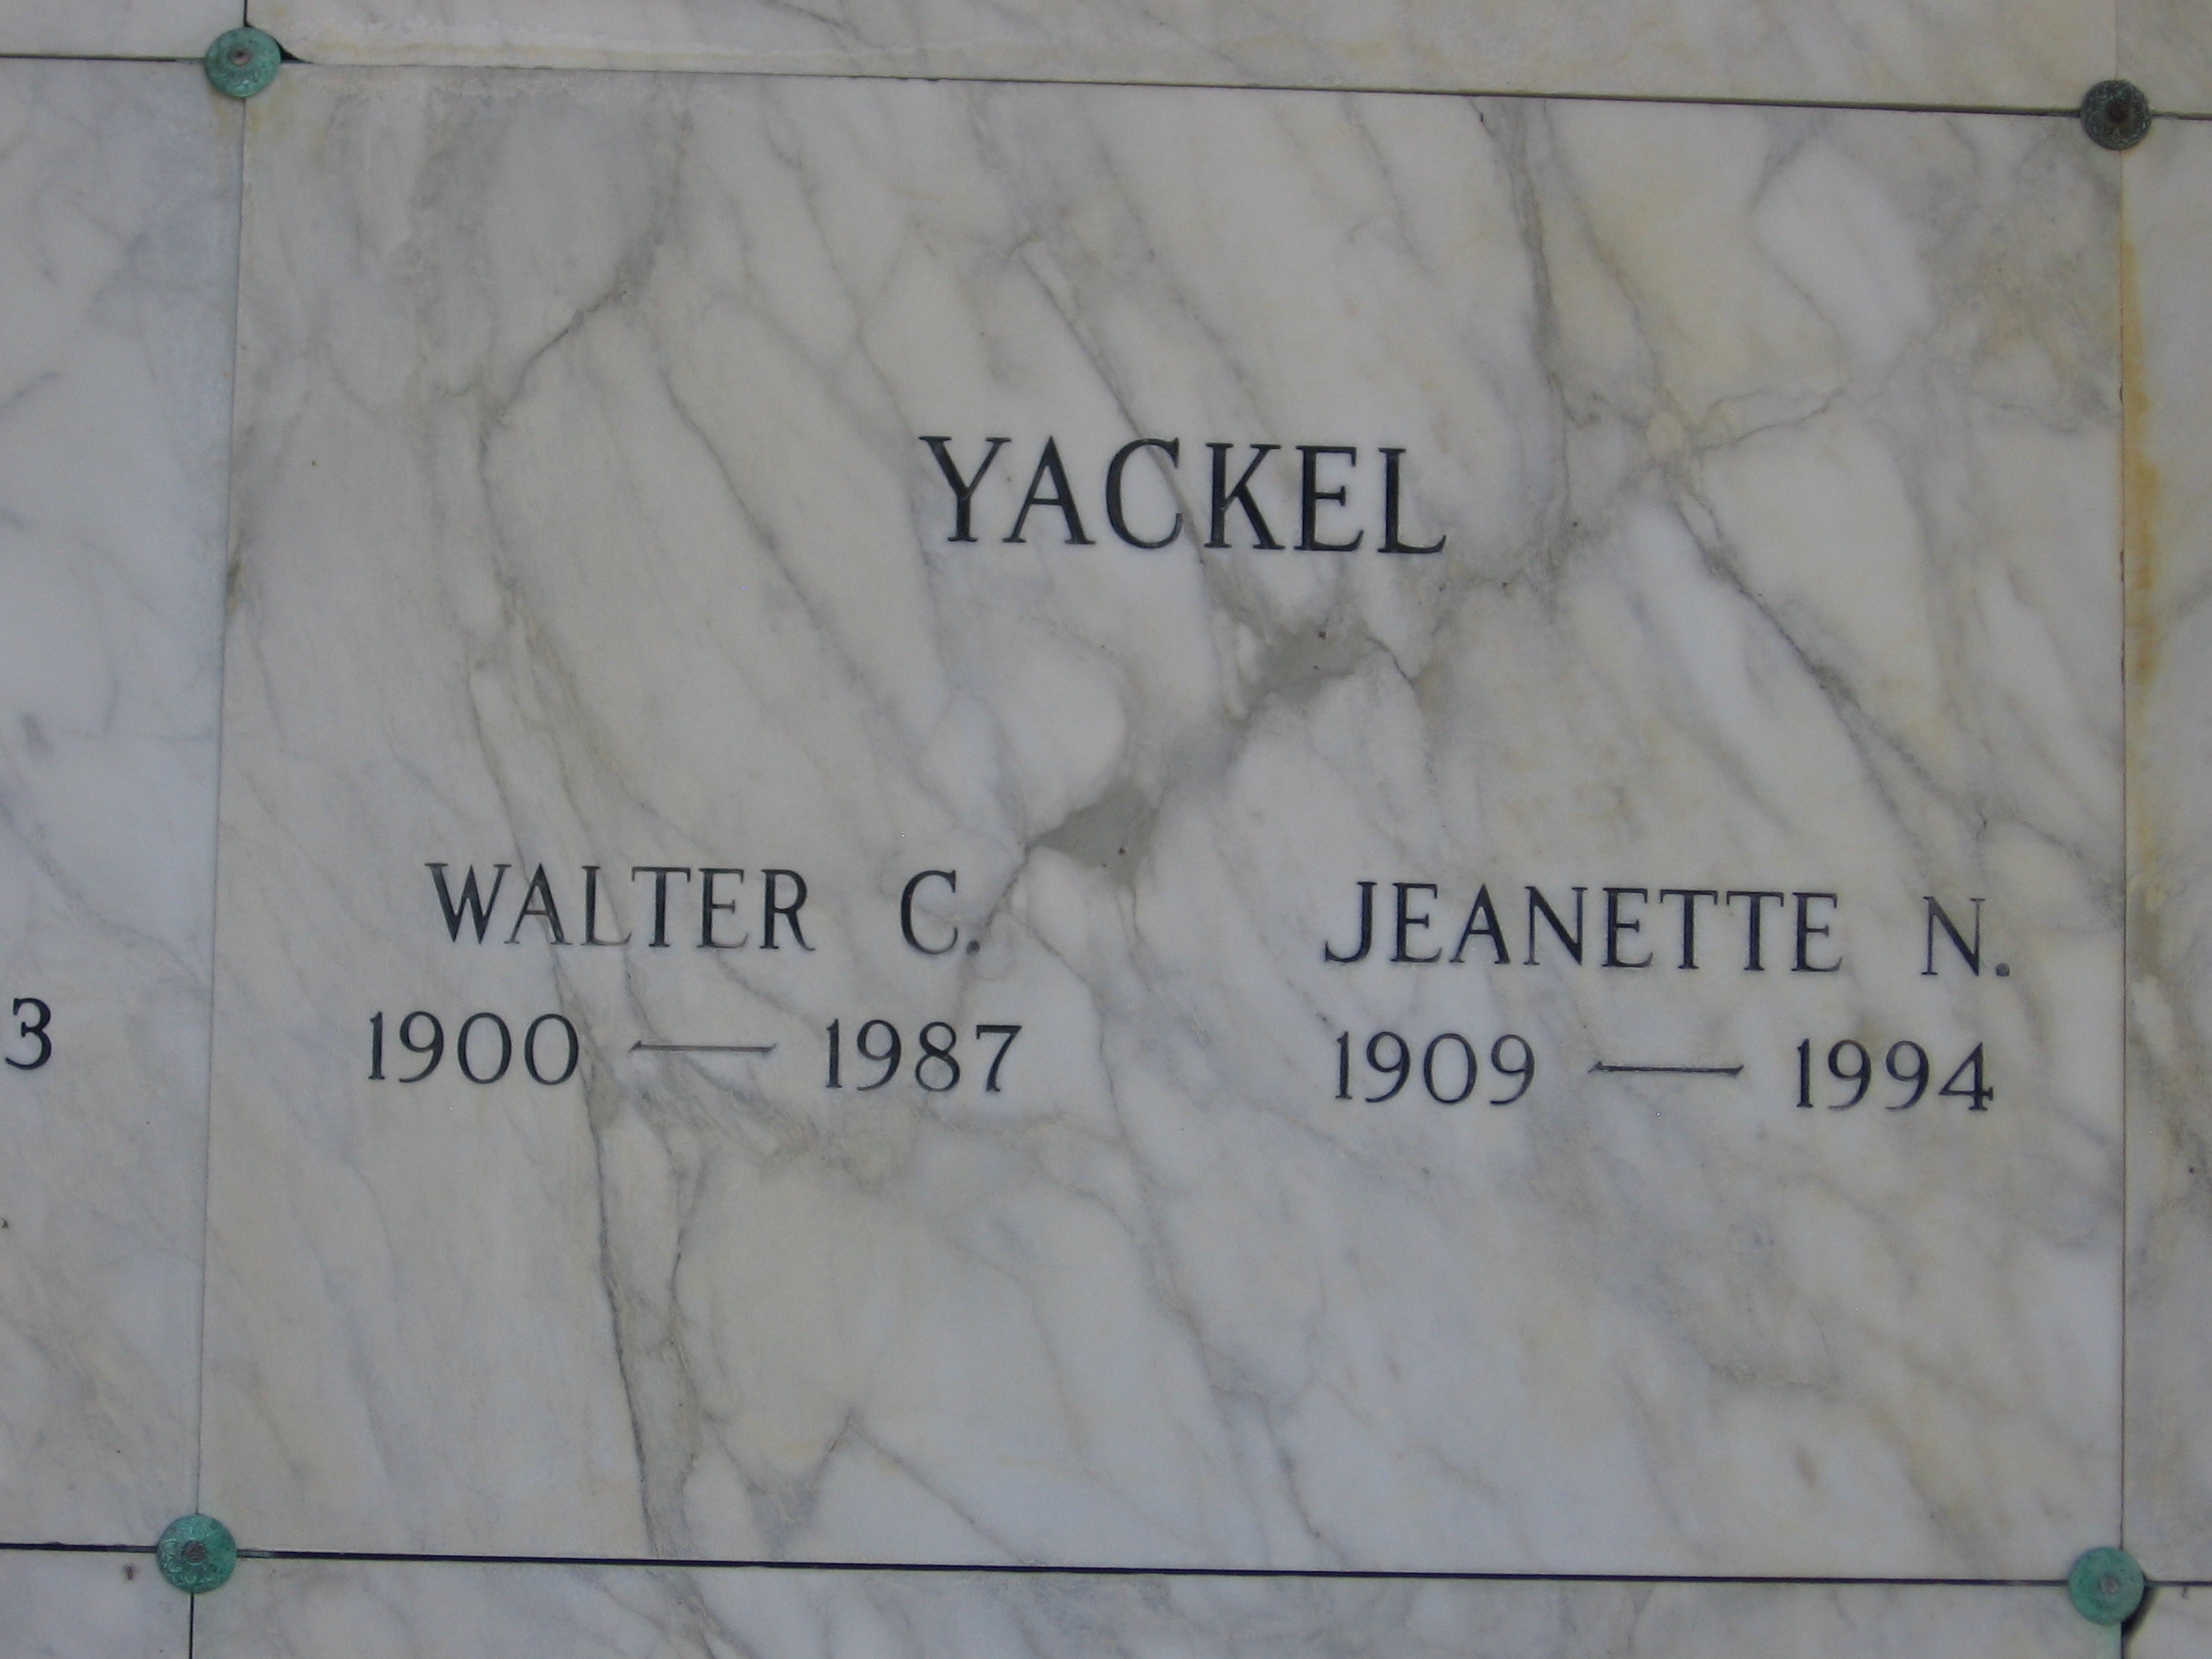 Walter C Yackel